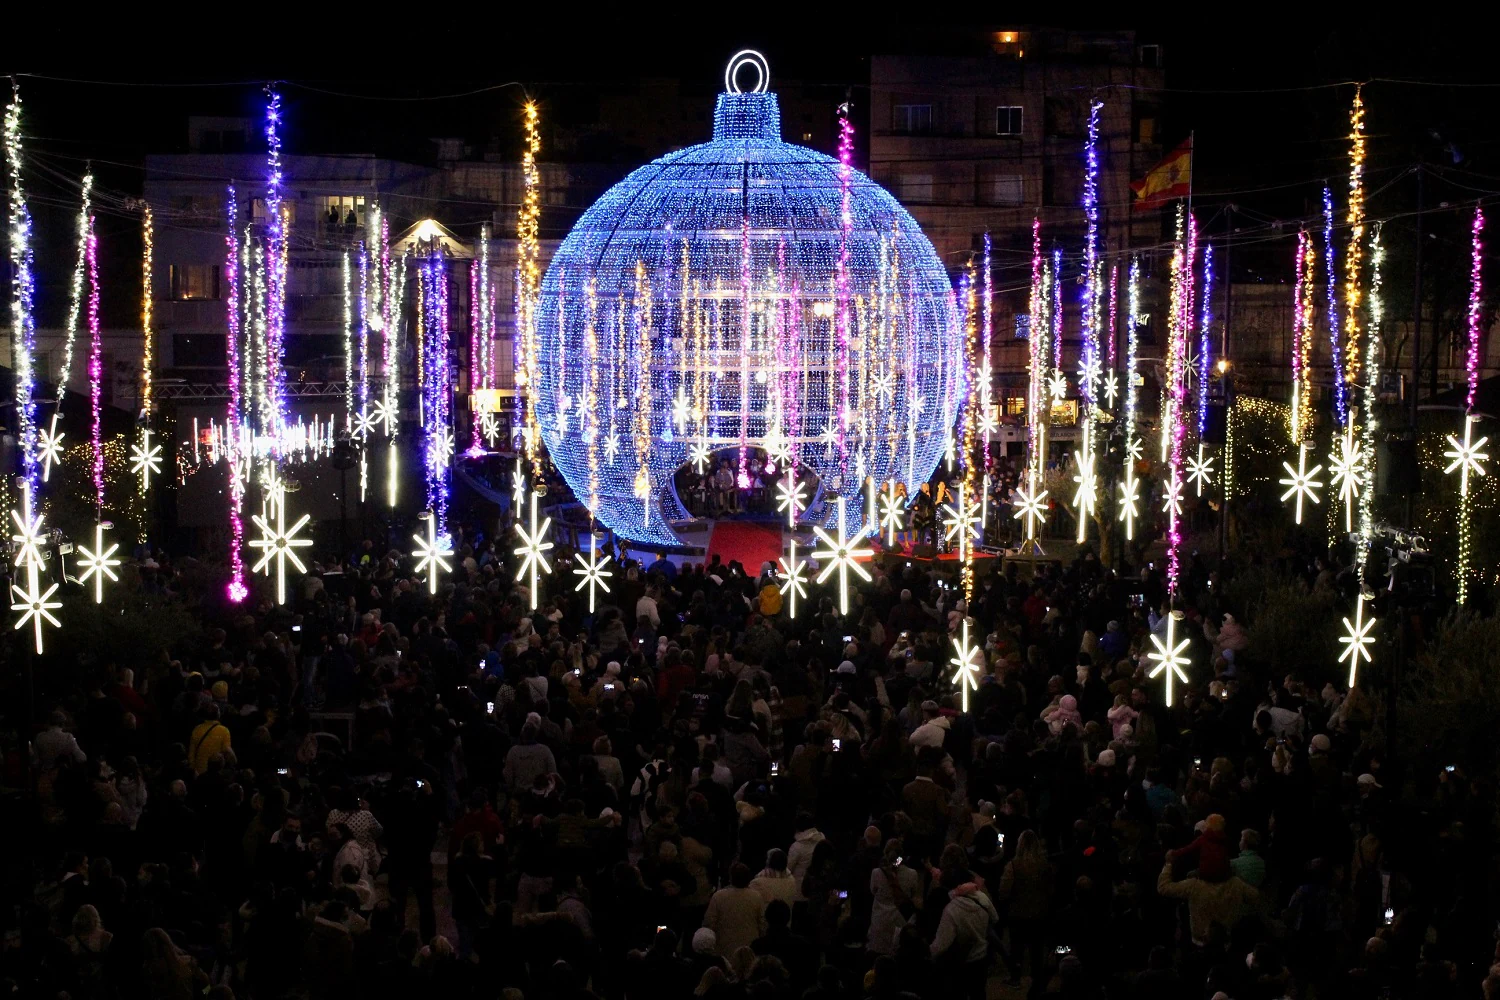 The Fuengirola Christmas lights show. 